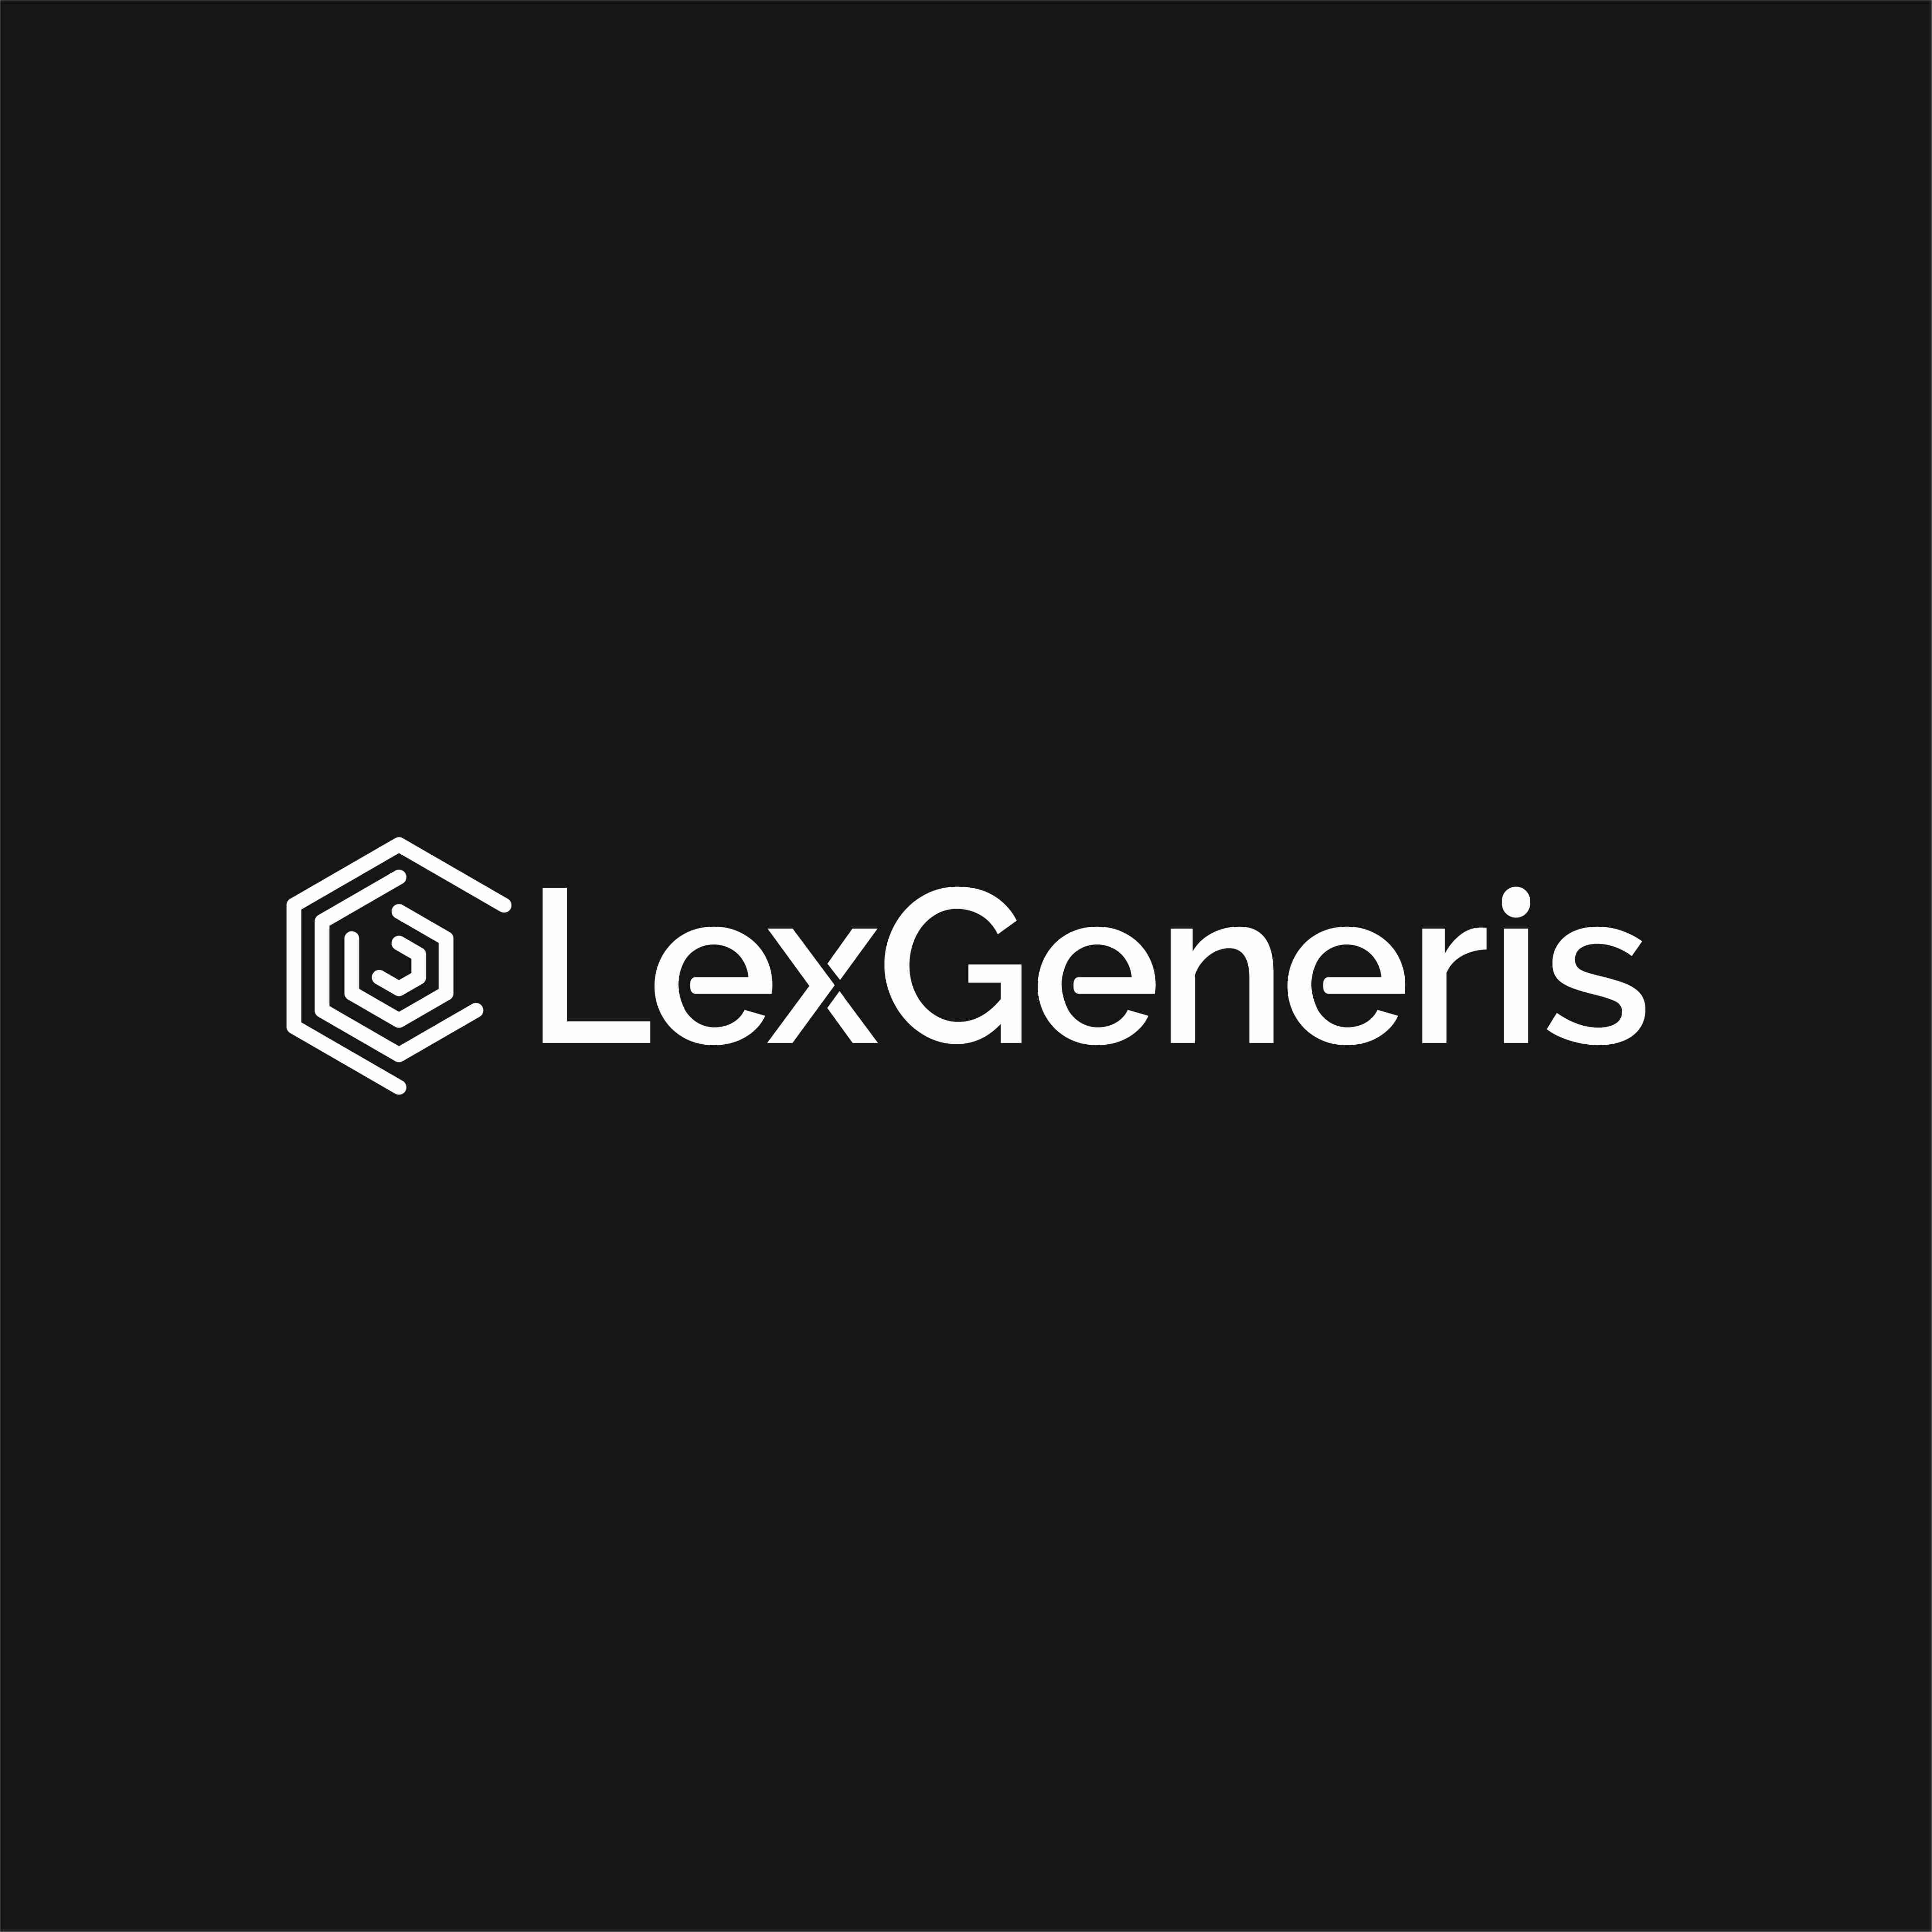 Lexgeneris IP Attorney